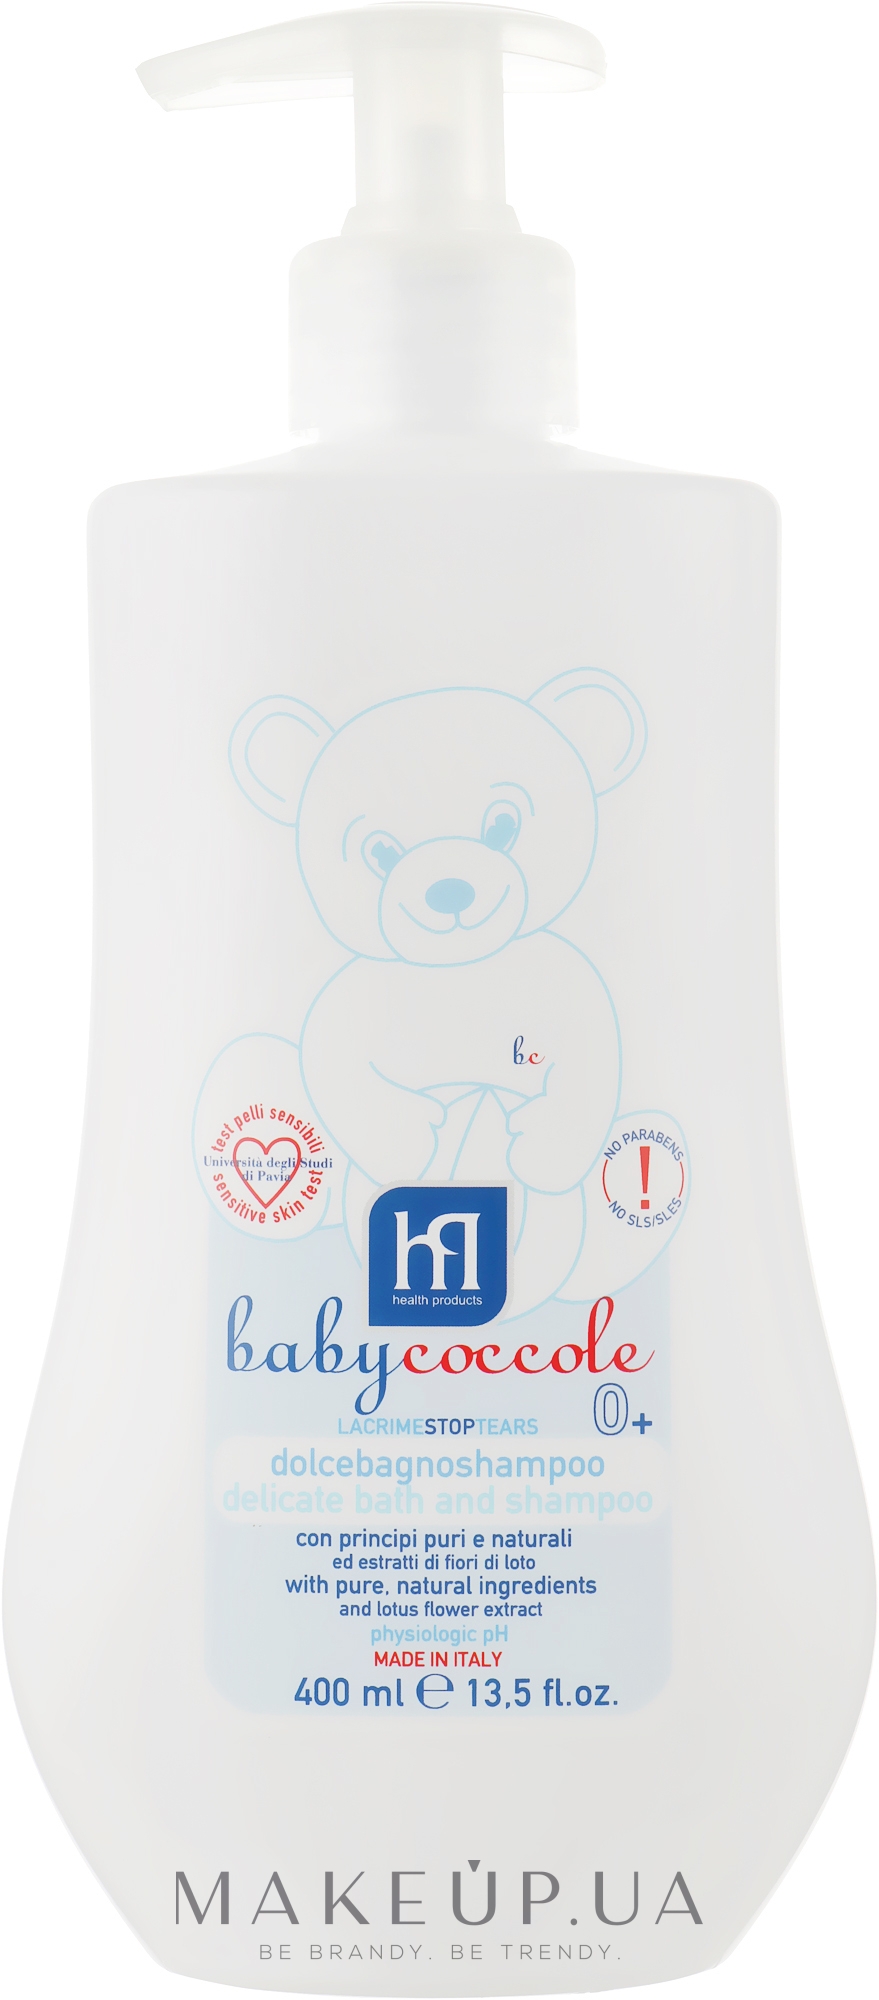 Нежная увлажняющая шампунь-пена для ванны - Babycoccole — фото 400ml